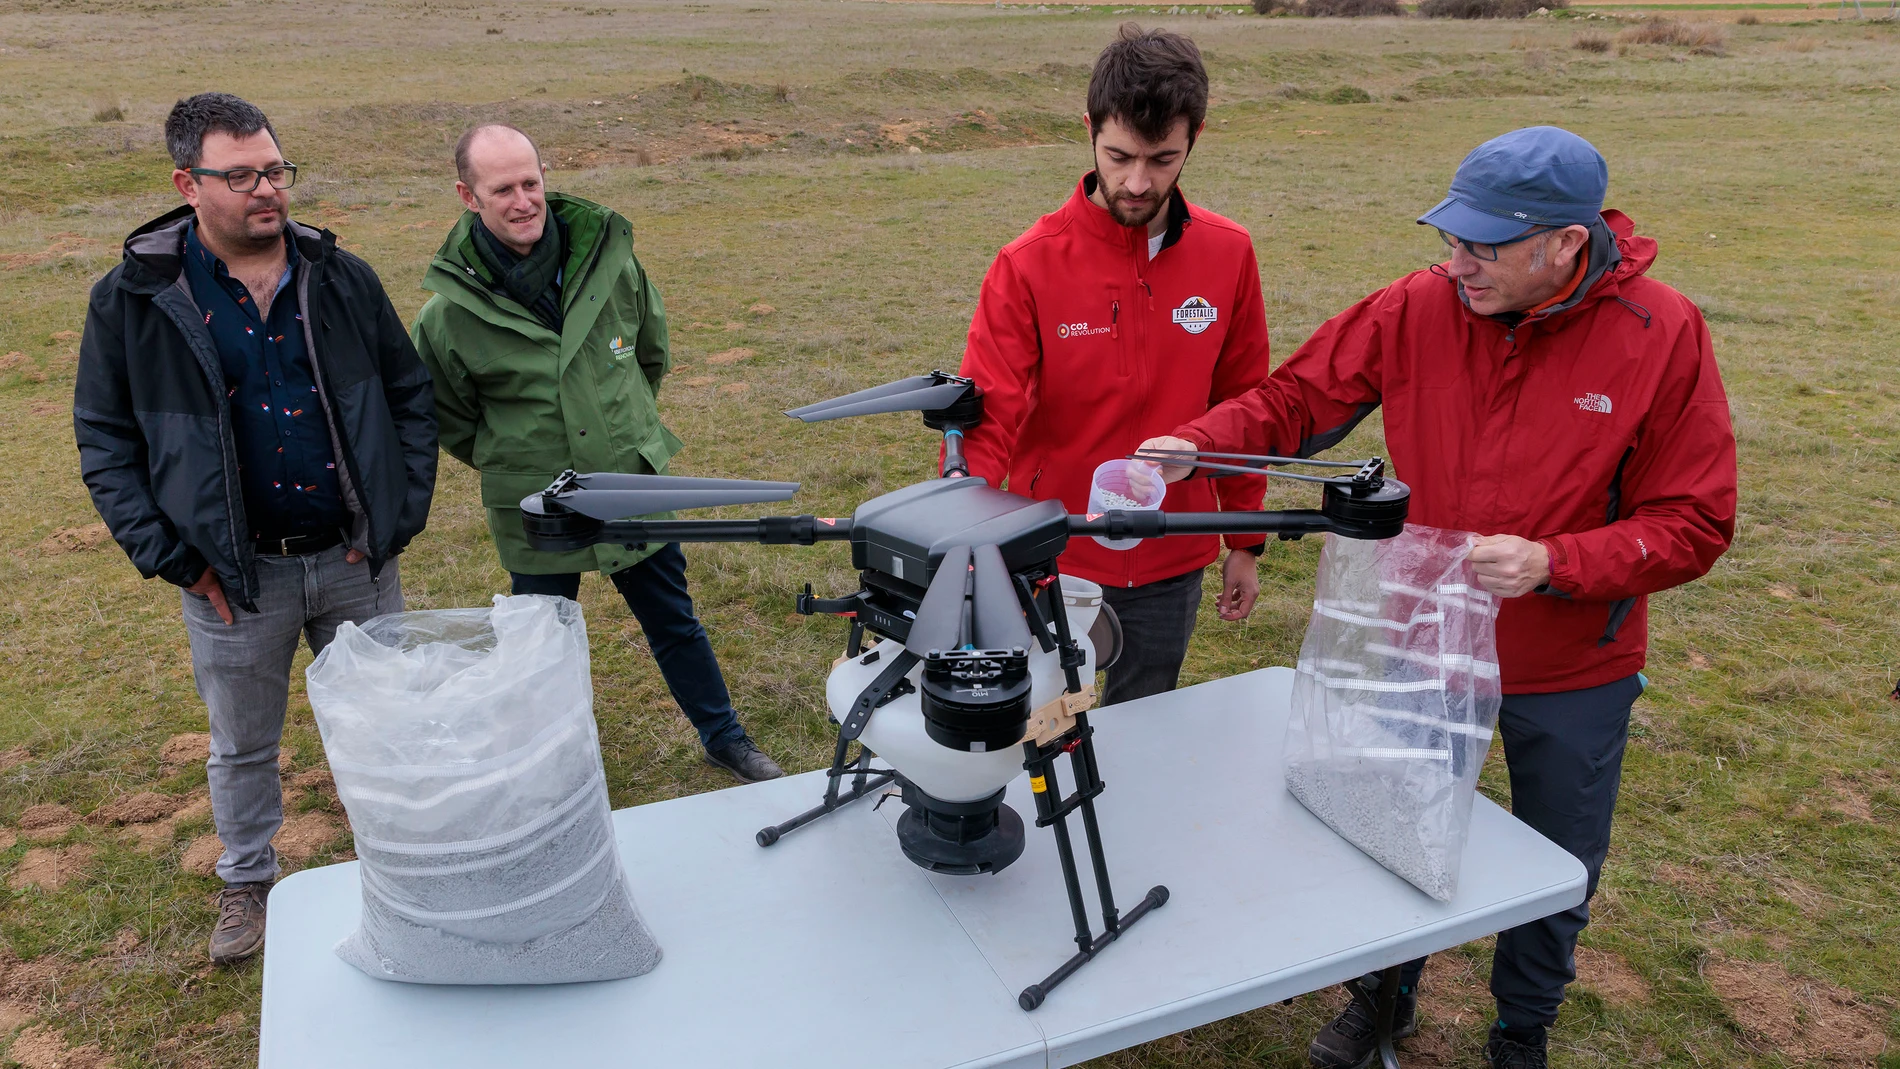 El dron puede sembrar hasta 100.000 semillas de árboles en un solo día, con elevada eficiencia y respeto por el medioambiente